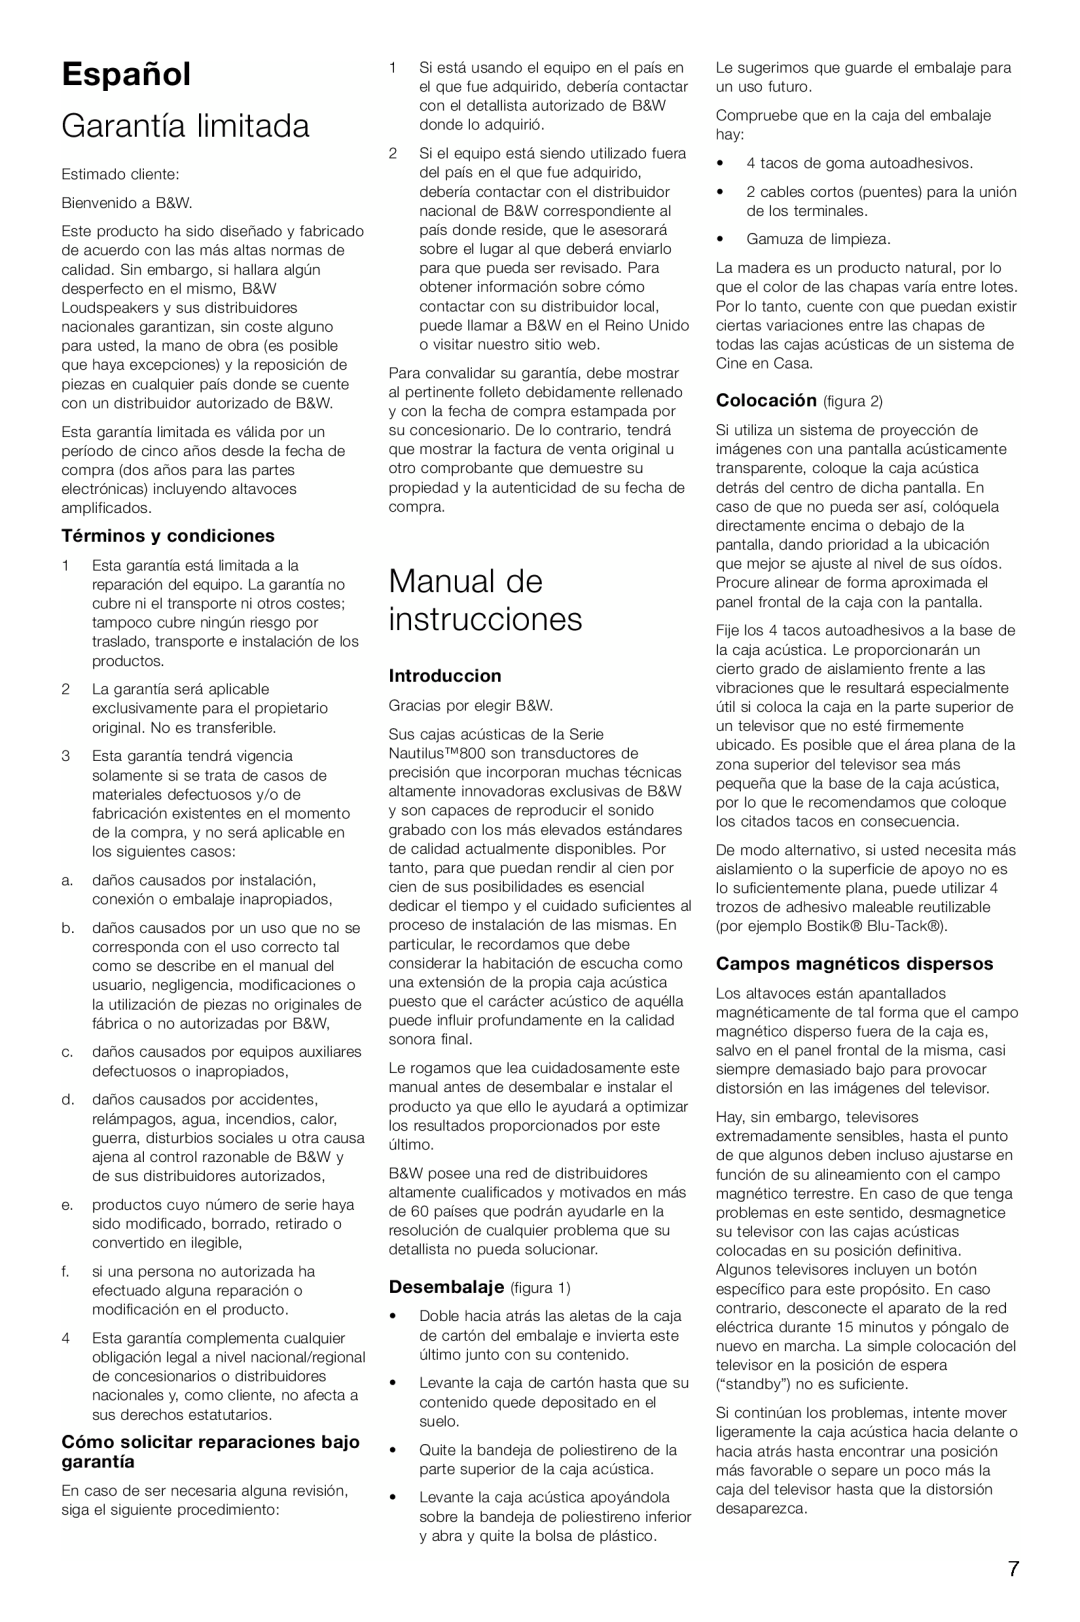 Bowers & Wilkins HTM1 Español, Garantía limitada, Manual de instrucciones, Colocación figura, Términos y condiciones 